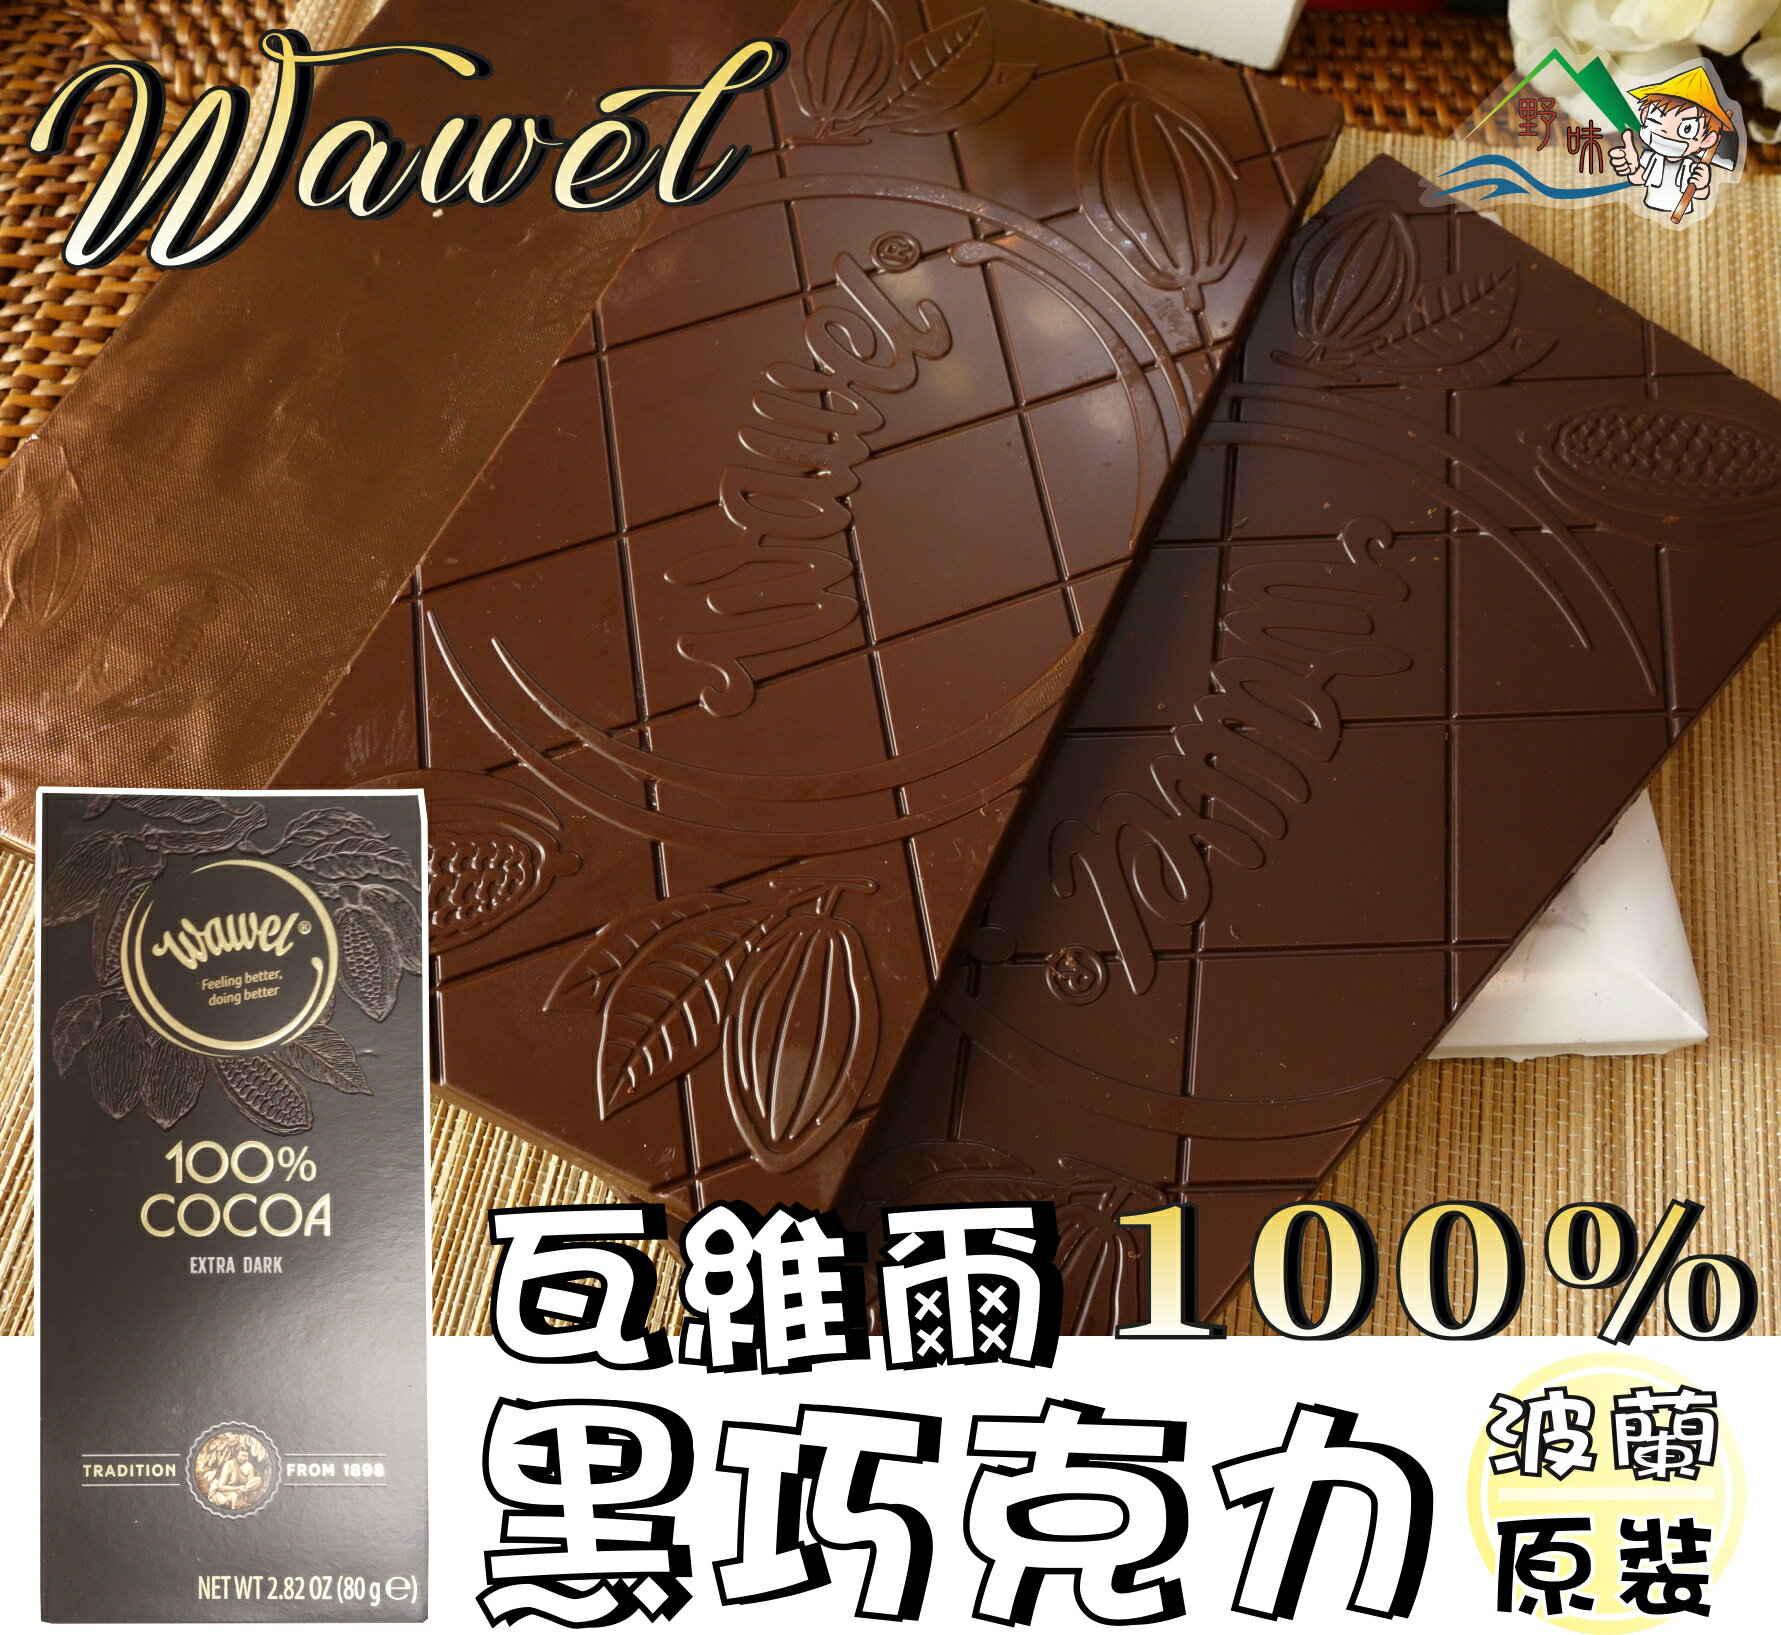 【野味食品】Wawel 瓦維爾100%黑巧克力(80g/盒，波蘭原裝，桃園實體店面出貨)純巧克力/100%巧克力/瓦維爾